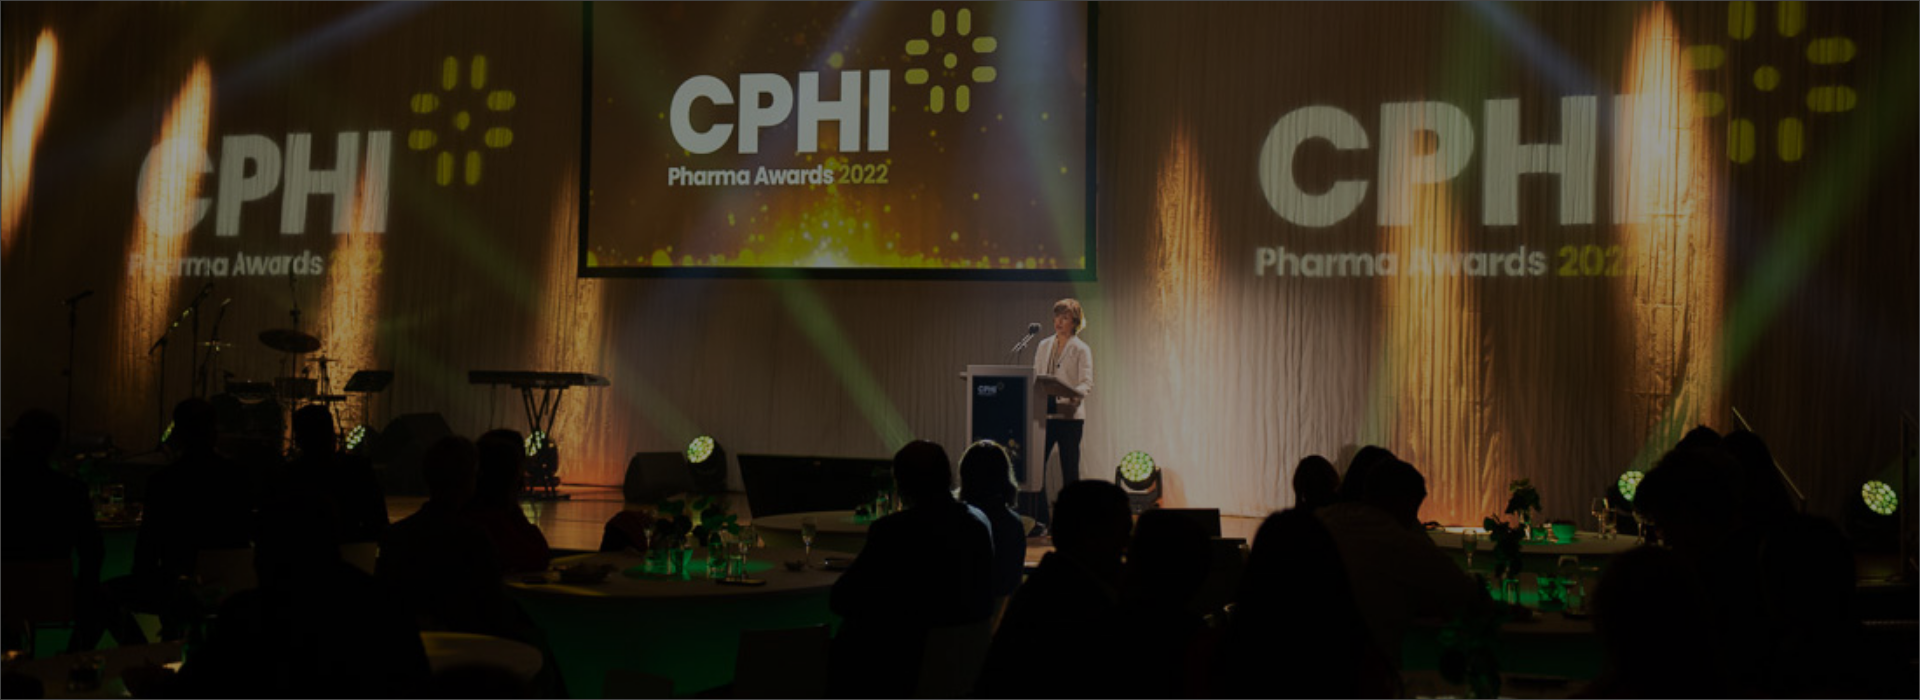 CPHI Frankfurt Pharma Awards